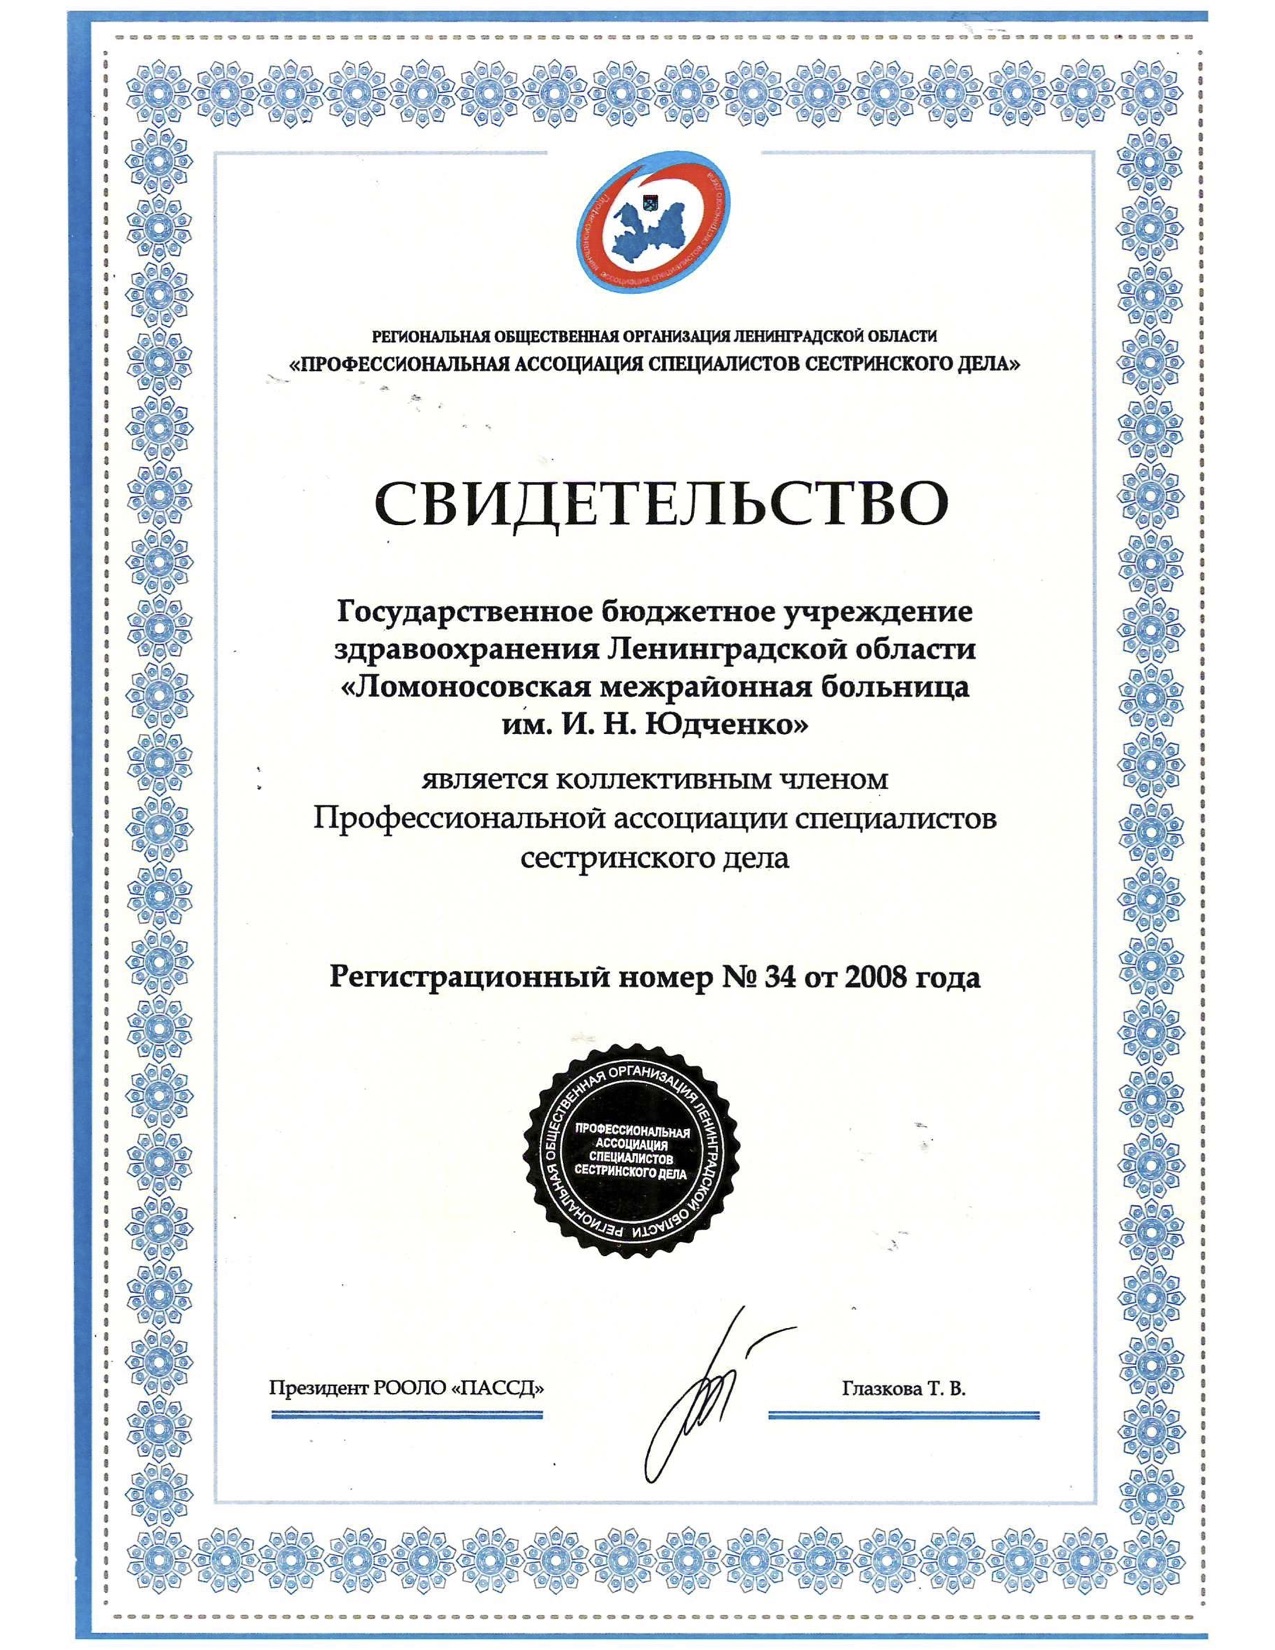 ГБУЗ ЛО "Ломоносовская МБ": сертификат